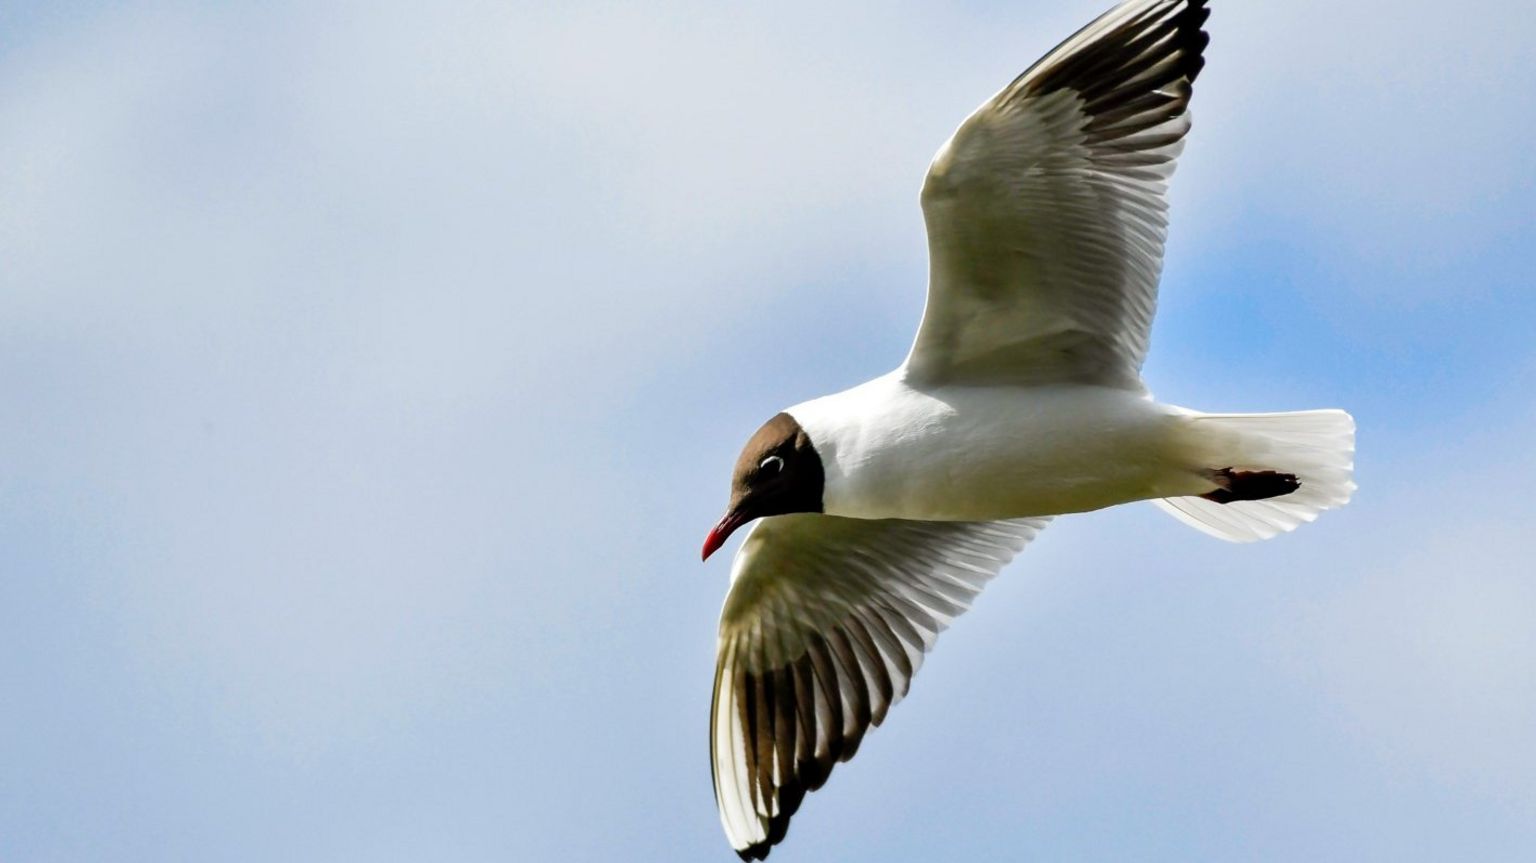 Black-headed gull in flight showing wing markings